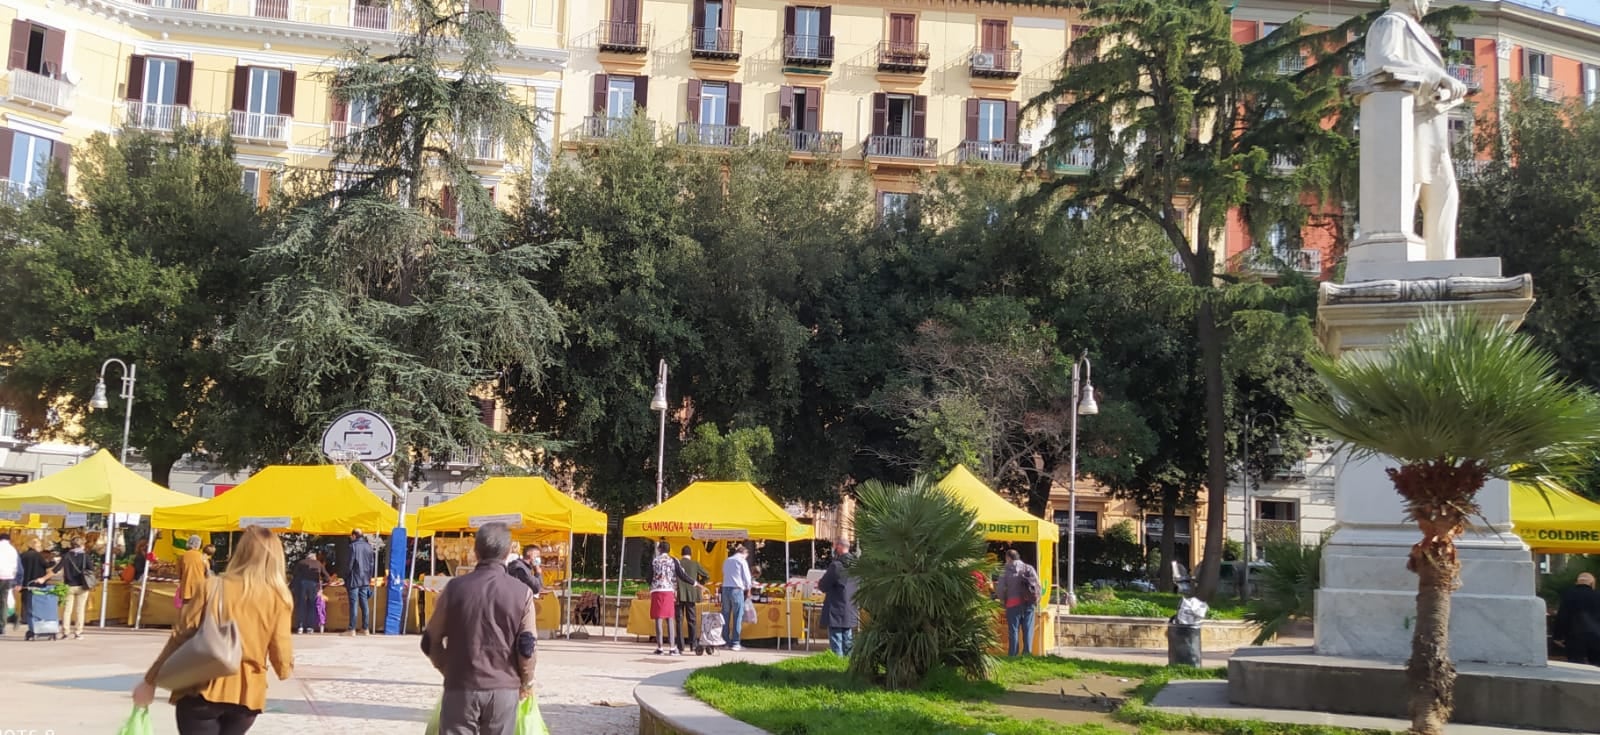 Mercati, Coldiretti Campania: Campagna Amica torna nelle piazze